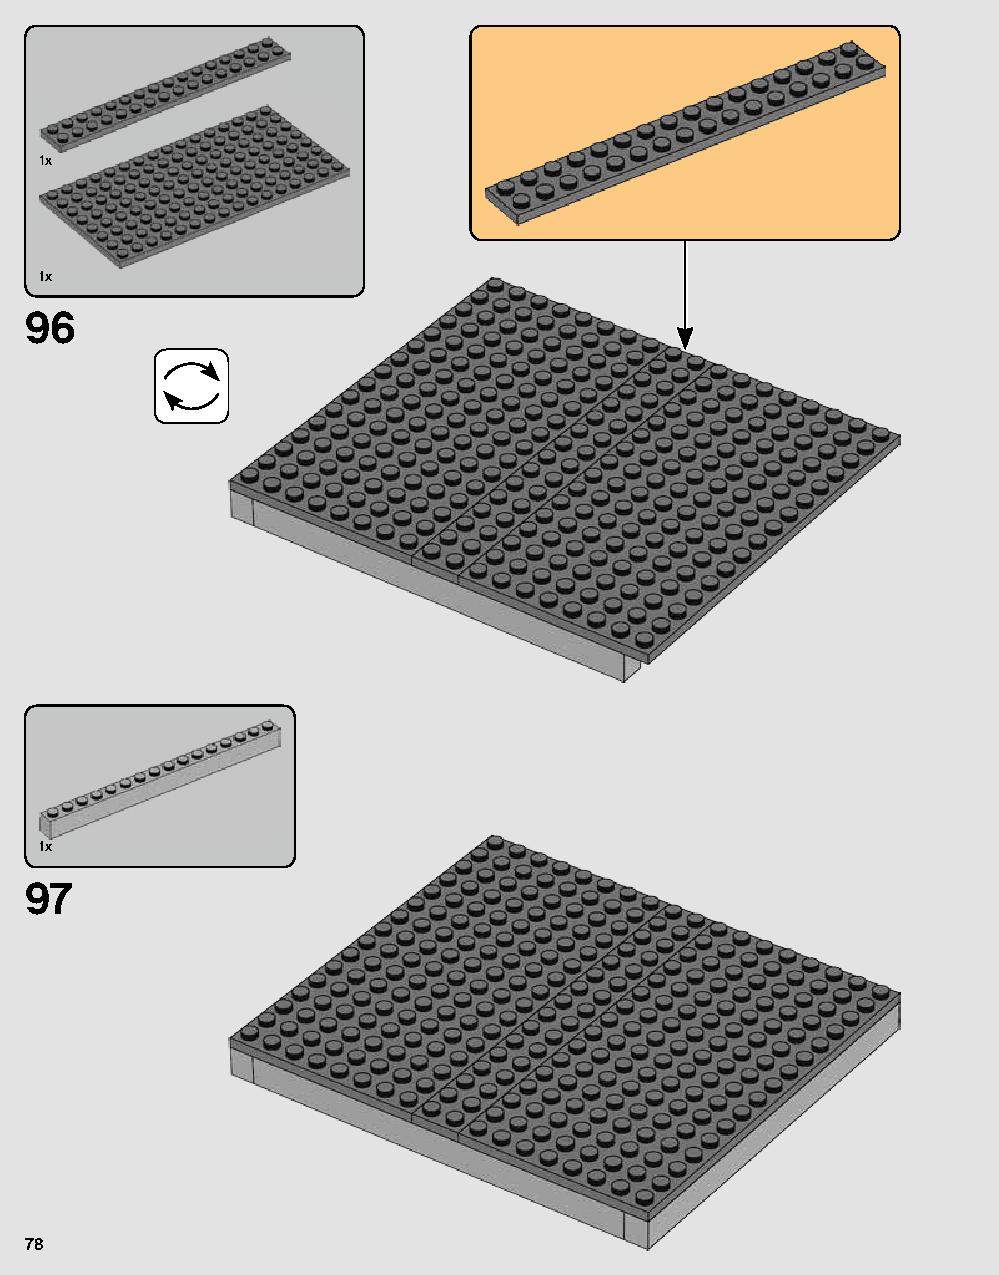 ダース・ベイダーの城 75251 レゴの商品情報 レゴの説明書・組立方法 78 page